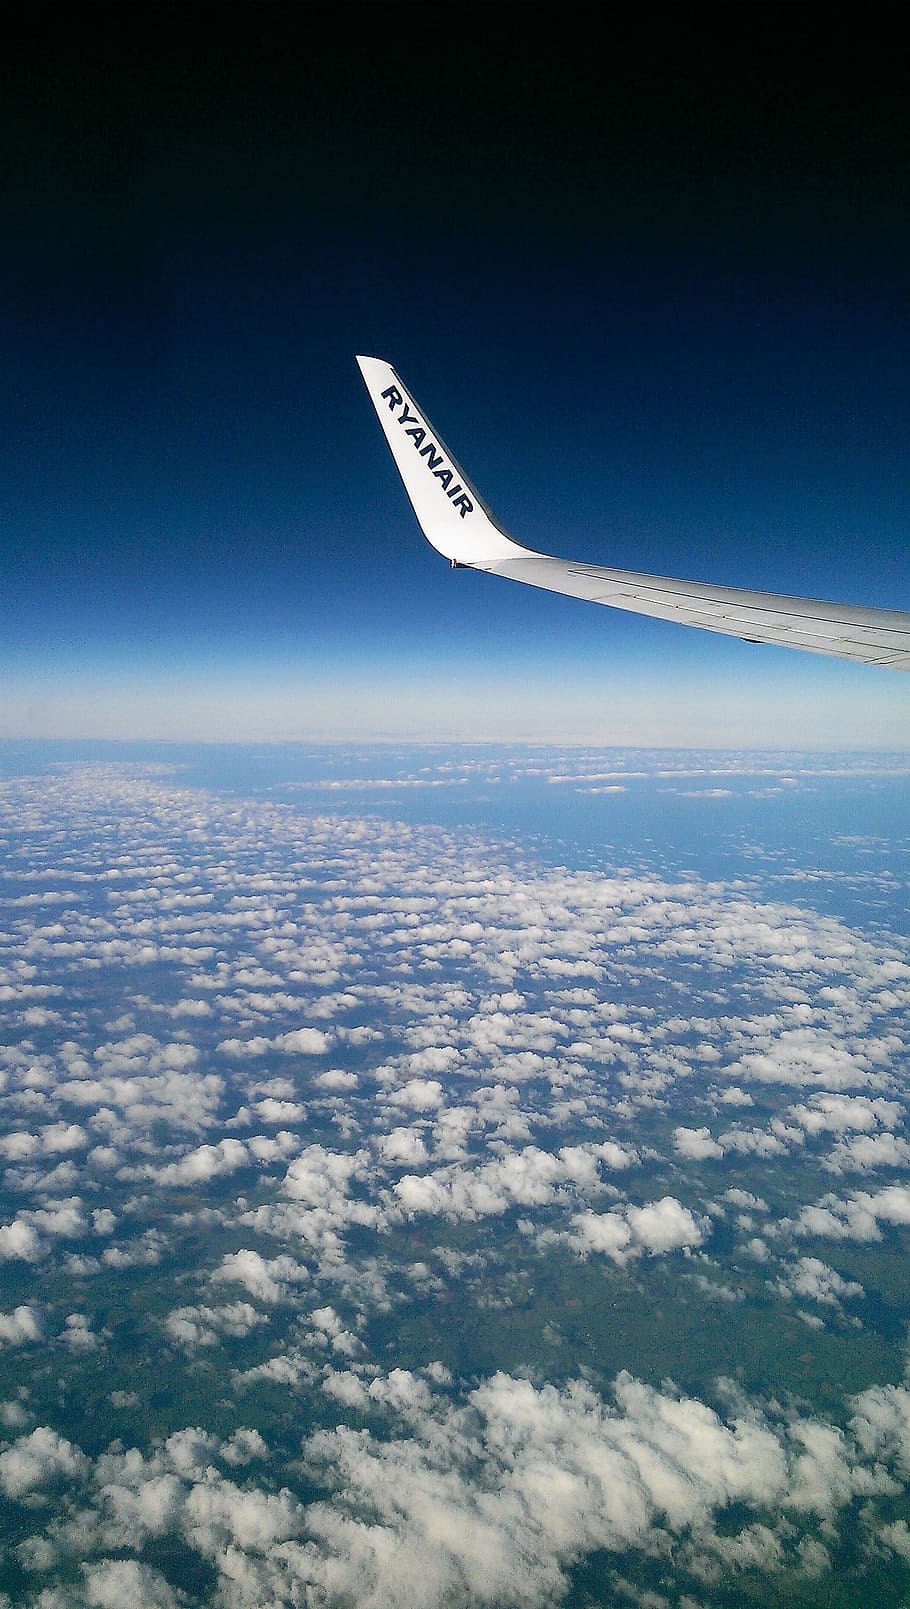 Cloud, Winglet, Horizon, Pesawat, eropa, ryanair, boeing 737, pesawat terbang, terbang, aerial View